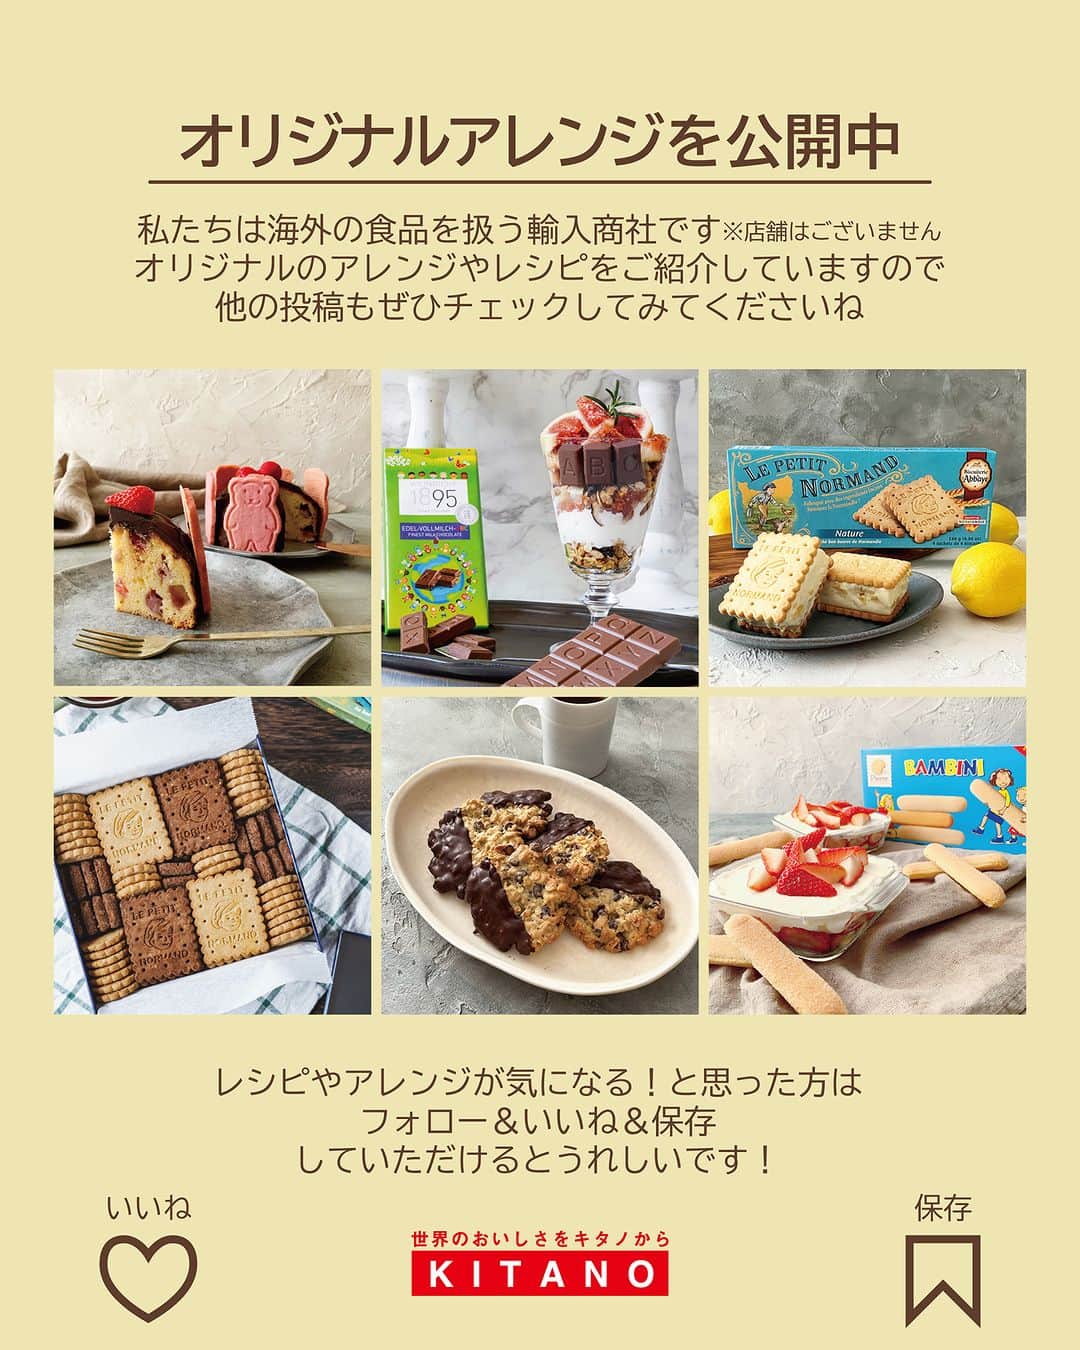 キタノ商事株式会社さんのインスタグラム写真 - (キタノ商事株式会社Instagram)「食べてみたい！と思ったらコメント欄に「🍊」作ってみたい！と思ったら「🍃」で教えていただけると嬉しいです♡  🍊サンドイッチケーキのレシピ🍃 🇩🇰ストリームライン[オレンジ] 北欧のサンドイッチケーキ・スモーガストルタのレシピ2つめは直径6cmプチサイズ。まさにケーキのようなプチスモーガストルタは、切り分けもしなくていいのでパーティーなどにとくにおすすめです。  ストリームライン[オレンジ]の甘すぎないすっきりさわやかな香りがサーモンの臭みを消してくれるので、どなたでもおいしくお召し上がりいただけます。どなたでもかわいらしい見た目にできるので、春のお庭のようなグリーンのスモーガストルタ、ぜひ作ってみてくださいね。  🍊 🇩🇰ストリームライン[オレンジ] ストリームライン オレンジとスモークサーモンのプチスモーガストルタ  〈所要時間〉 約20分 ※各工程で、スモーガストルタを冷やす時間を除きます。 ※スモーガストルタをデコレーションする時間を除きます。  〈材料・直径6cm丸型2台分〉 ・A:クリームチーズ(室温に戻したもの) 80g、牛乳 大さじ1 ・サンドイッチ用食パン(10cm×10cm) 4枚 ・スモークサーモン 2枚(20g) ・粒マスタード 適量 ・ストリームライン オレンジ 小さじ2 ・ディル 適量、旬の柑橘類1〜2ミリスライス 3枚程度、フレッシュミントの葉 適量  〈事前準備〉 ・クリームチーズを室温に戻しておく  〈作り方〉 1.Aをボウルに合わせ、ホイッパーまたはハンドミキサーの低速でなめらかになるまで練り混ぜる。  2.サンドイッチ用の食パンは、1枚から丸型を2枚ずつ型抜く。またはキッチンバサミでカットして8枚の丸型をつくっておく。  3.スモークサーモンは、それぞれを3等分にカットしておく。  4.2のパンの表面に、1と粒マスタードを塗り、スモークサーモンを1切れのせ、ストリームライン小さじ1/3を塗る。重ねるパンの片面に1を塗り、塗った面を下にして重ねる。  5.4の重ねた上に1と粒マスタードを塗り、4と同じ工程を2回くり返し、合計4段のサンドイッチにする。同じものをもう一台組み立て、冷蔵庫で20分冷やし固める。  6.5の全体に、1のクリームを薄く下塗りして、冷蔵庫で30分冷やし固める。  7.1の残りのクリームに牛乳少量(分量外)を加えて練り混ぜ直し、最初よりも柔らかめのクリーム状にする。  8.6の全体に仕上げ塗りをし、冷蔵庫で20分冷やし固める。  9.8にディル、オレンジ、ミントを飾り器に盛り付け、仕上げにストリームラインオレンジ(分量外)をトップの所々に散らす。  〈NOTES〉 ・各工程でしっかり冷やし固めると次の工程でスムーズに作業できます。 ・サイドのディルは、お好みの量をデコレーションしてください。 ・ ・ マーマレードの爽やかな酸味と甘みをスモークサーモンに合わせたプチスモーガストルタ。粒マスタードのアクセントがマーマレードの風味を引き立てます。 サーモンの臭みをマーマレードが打ち消してくれるのでどなたでもお召し上がりいただける、パーティーなどにはぴったりの小さなサイズのサンドイッチケーキです。  🍊 ＼食べてみたらぜひ教えてください／ 素敵な投稿をこちらのアカウントではご紹介させていただいております。 @kitano_kk と #ストリームラインジャム のタグをつけて投稿してみてくださいね。ストーリーズでもフィードでもどちらでも🙆です♡みなさまの投稿をお待ちしております。  🍂 【販売店情報】 「ヨドバシ.com」にて🇩🇰ストリームライン[オレンジ]をお取り扱いいただいております。「ストリームライン」でチェックしてみてくださいね。 https://www.yodobashi.com/ ※在庫状況は変動するため、在庫がない場合もございます。予めご了承ください。  🍊 -------------- 🇩🇰ストリームライン 北欧・デンマーク生まれの低糖度ジャム[ストリームライン]は、甘さ控えめですっきりとした味わい。味の秘密は、一番美味しい時期に収穫したフルーツと、てんさい糖を使用していること。後味まですっきりとした味わいで飽きずに食べられる長期保存のきくフルーツのようなジャムですが、着色料も保存料も使用していません。糖度45度なのでカロリーも控えめ。お料理やお菓子作りなど、どんなものにも使いやすい、すっきりとした控えめな甘さが他にはないストリームラインの魅力です。 -------------- 🍃  #ストリームライン #ストリームラインジャム #オレンジ #デンマーク #低糖度ジャム #キタノ商事 #世界のおいしさをキタノから ・ ・ ・ ・ ・ #スモーガストルタ #サンドイッチケーキ #サンドイッチ #デンマーク #ジャム #フルーツ #スイーツ #パン #誕生日メニュー #レシピあり #おうちカフェ #パン好き #パンスタグラム #wp_deli_japan #パン活 #食パン #春待ちおうちカフェ #おうちパン #キッチングラム #暮らしを楽しむ #豊かな食卓 #テーブルフォト」3月31日 8時00分 - kitano_kk